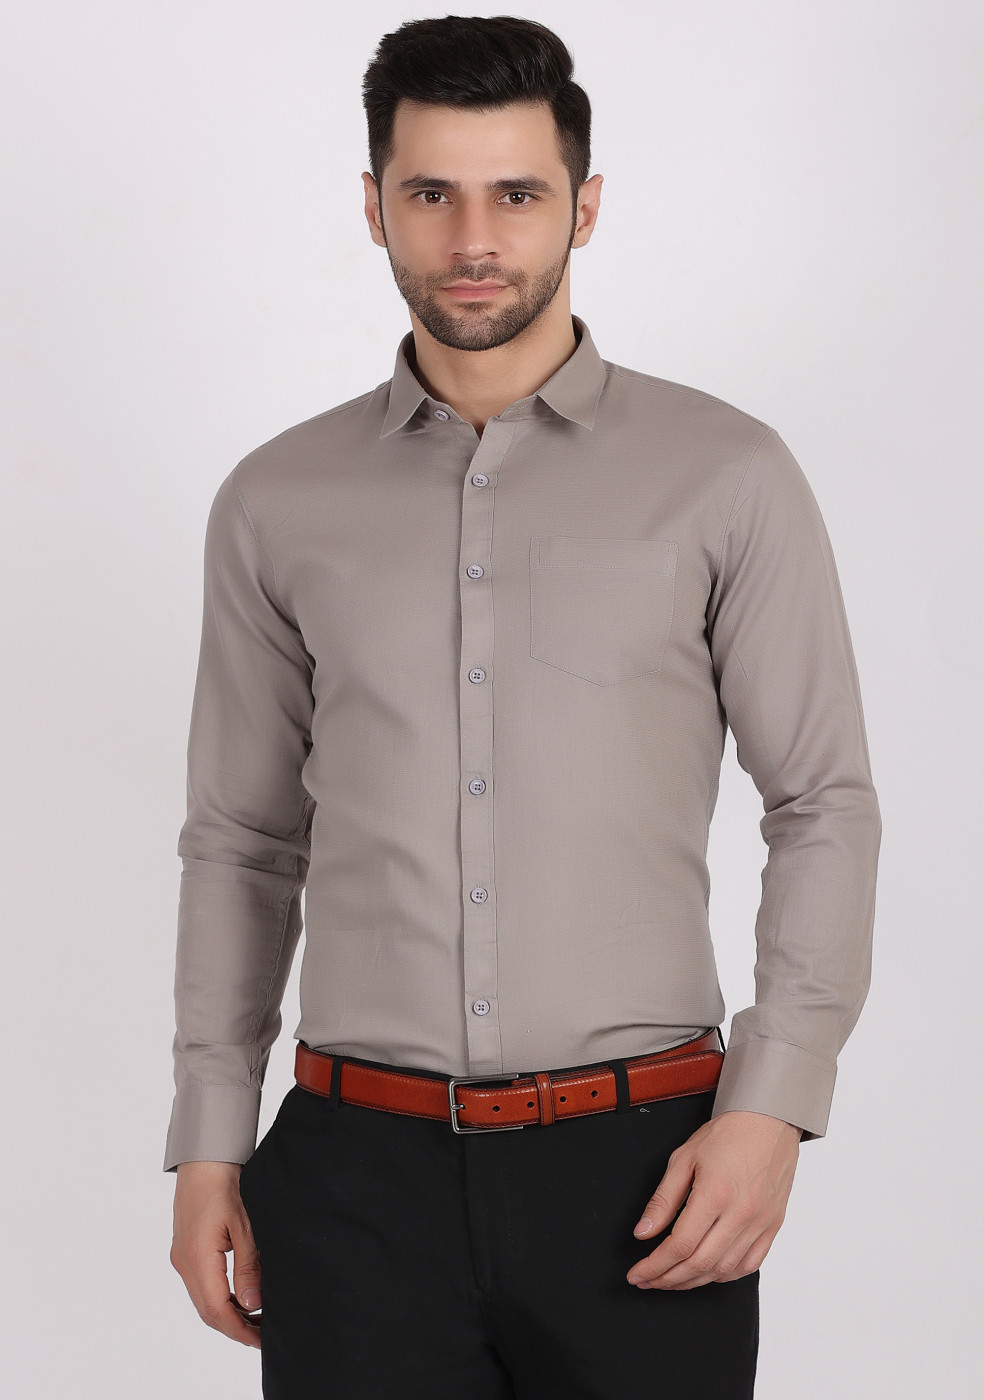 ASHTOM Plain Formal Cotton Shirt For Men